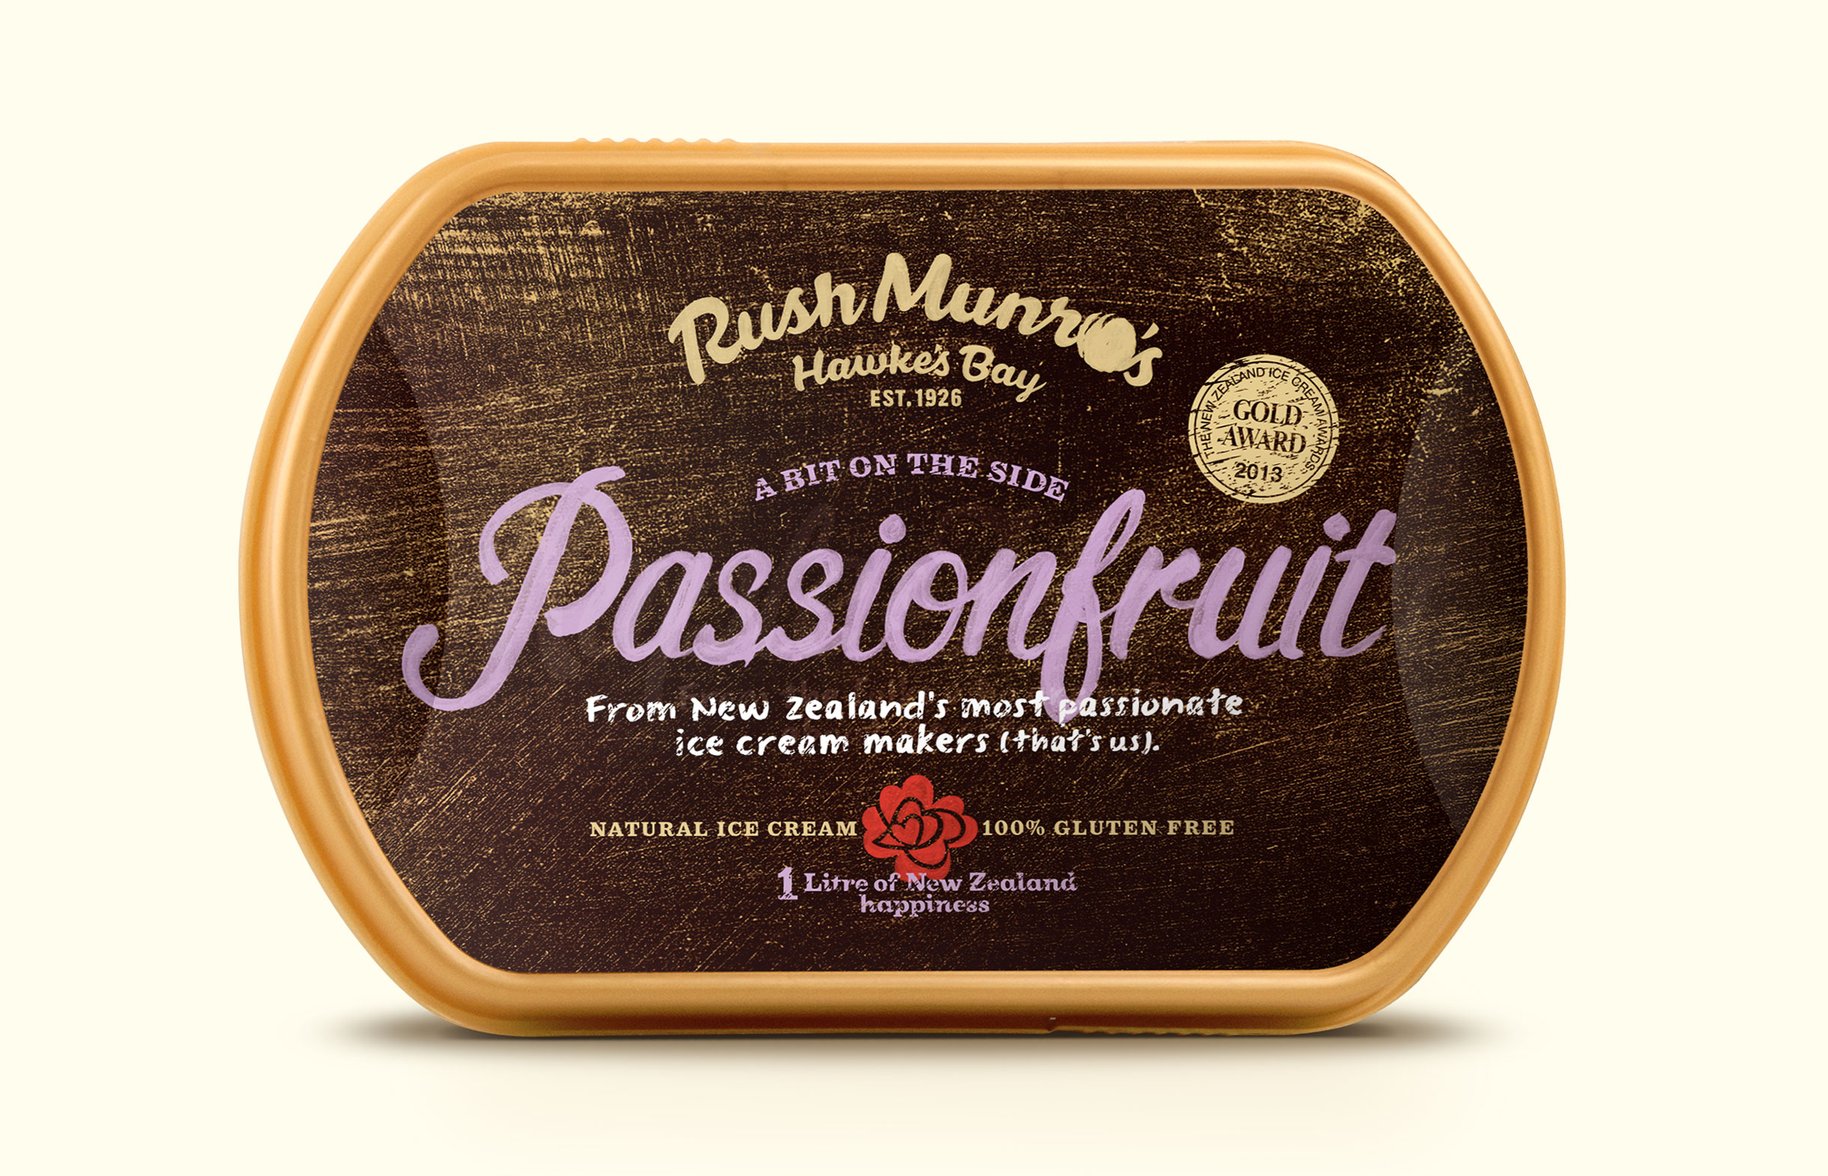 Rush Munro's passionfruit ice cream packaging 